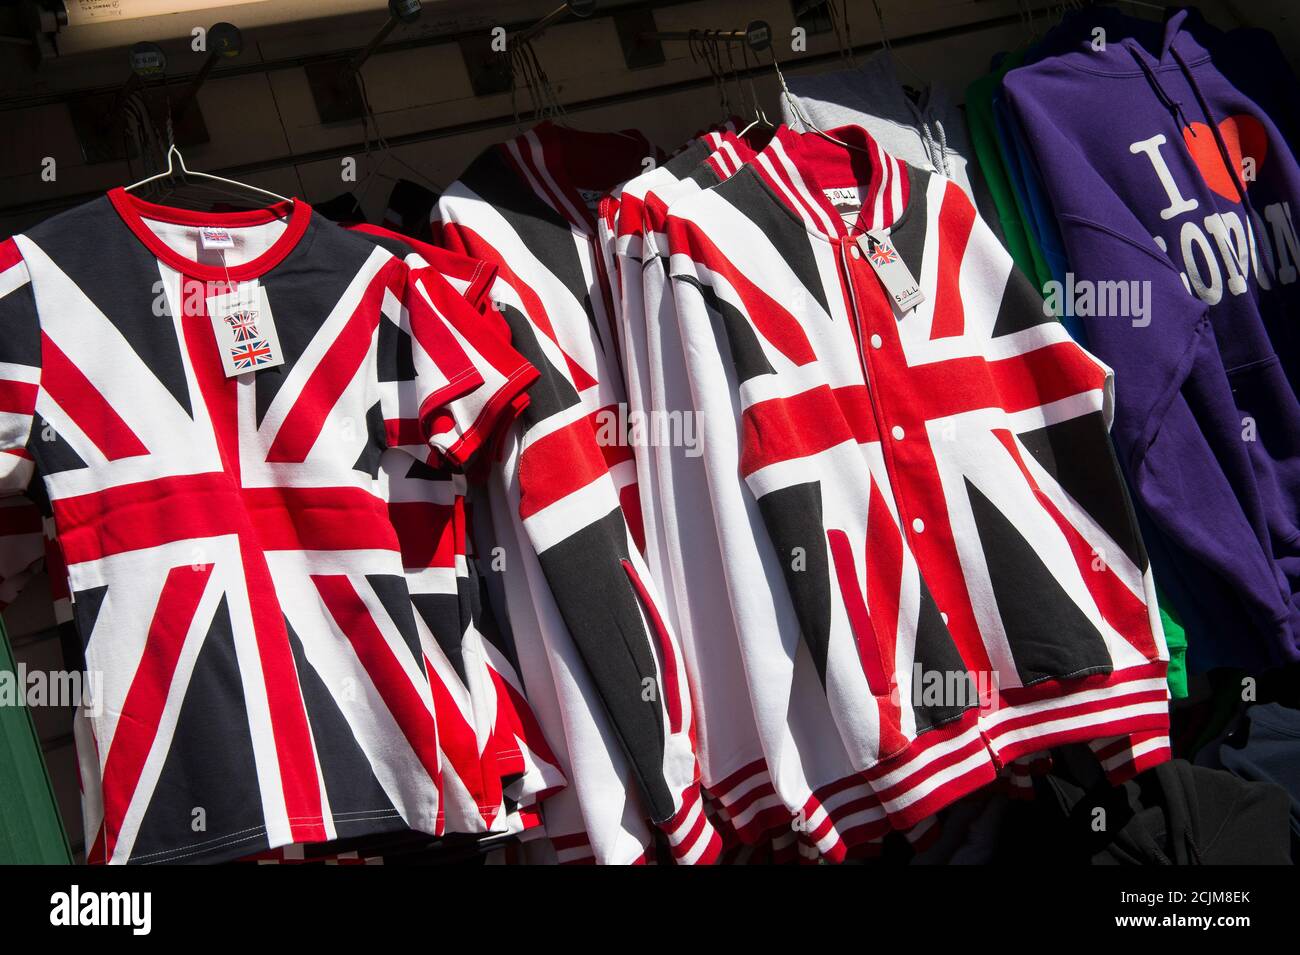 Vêtements à vendre sur une cabine souvenir à Londres, Angleterre. Banque D'Images